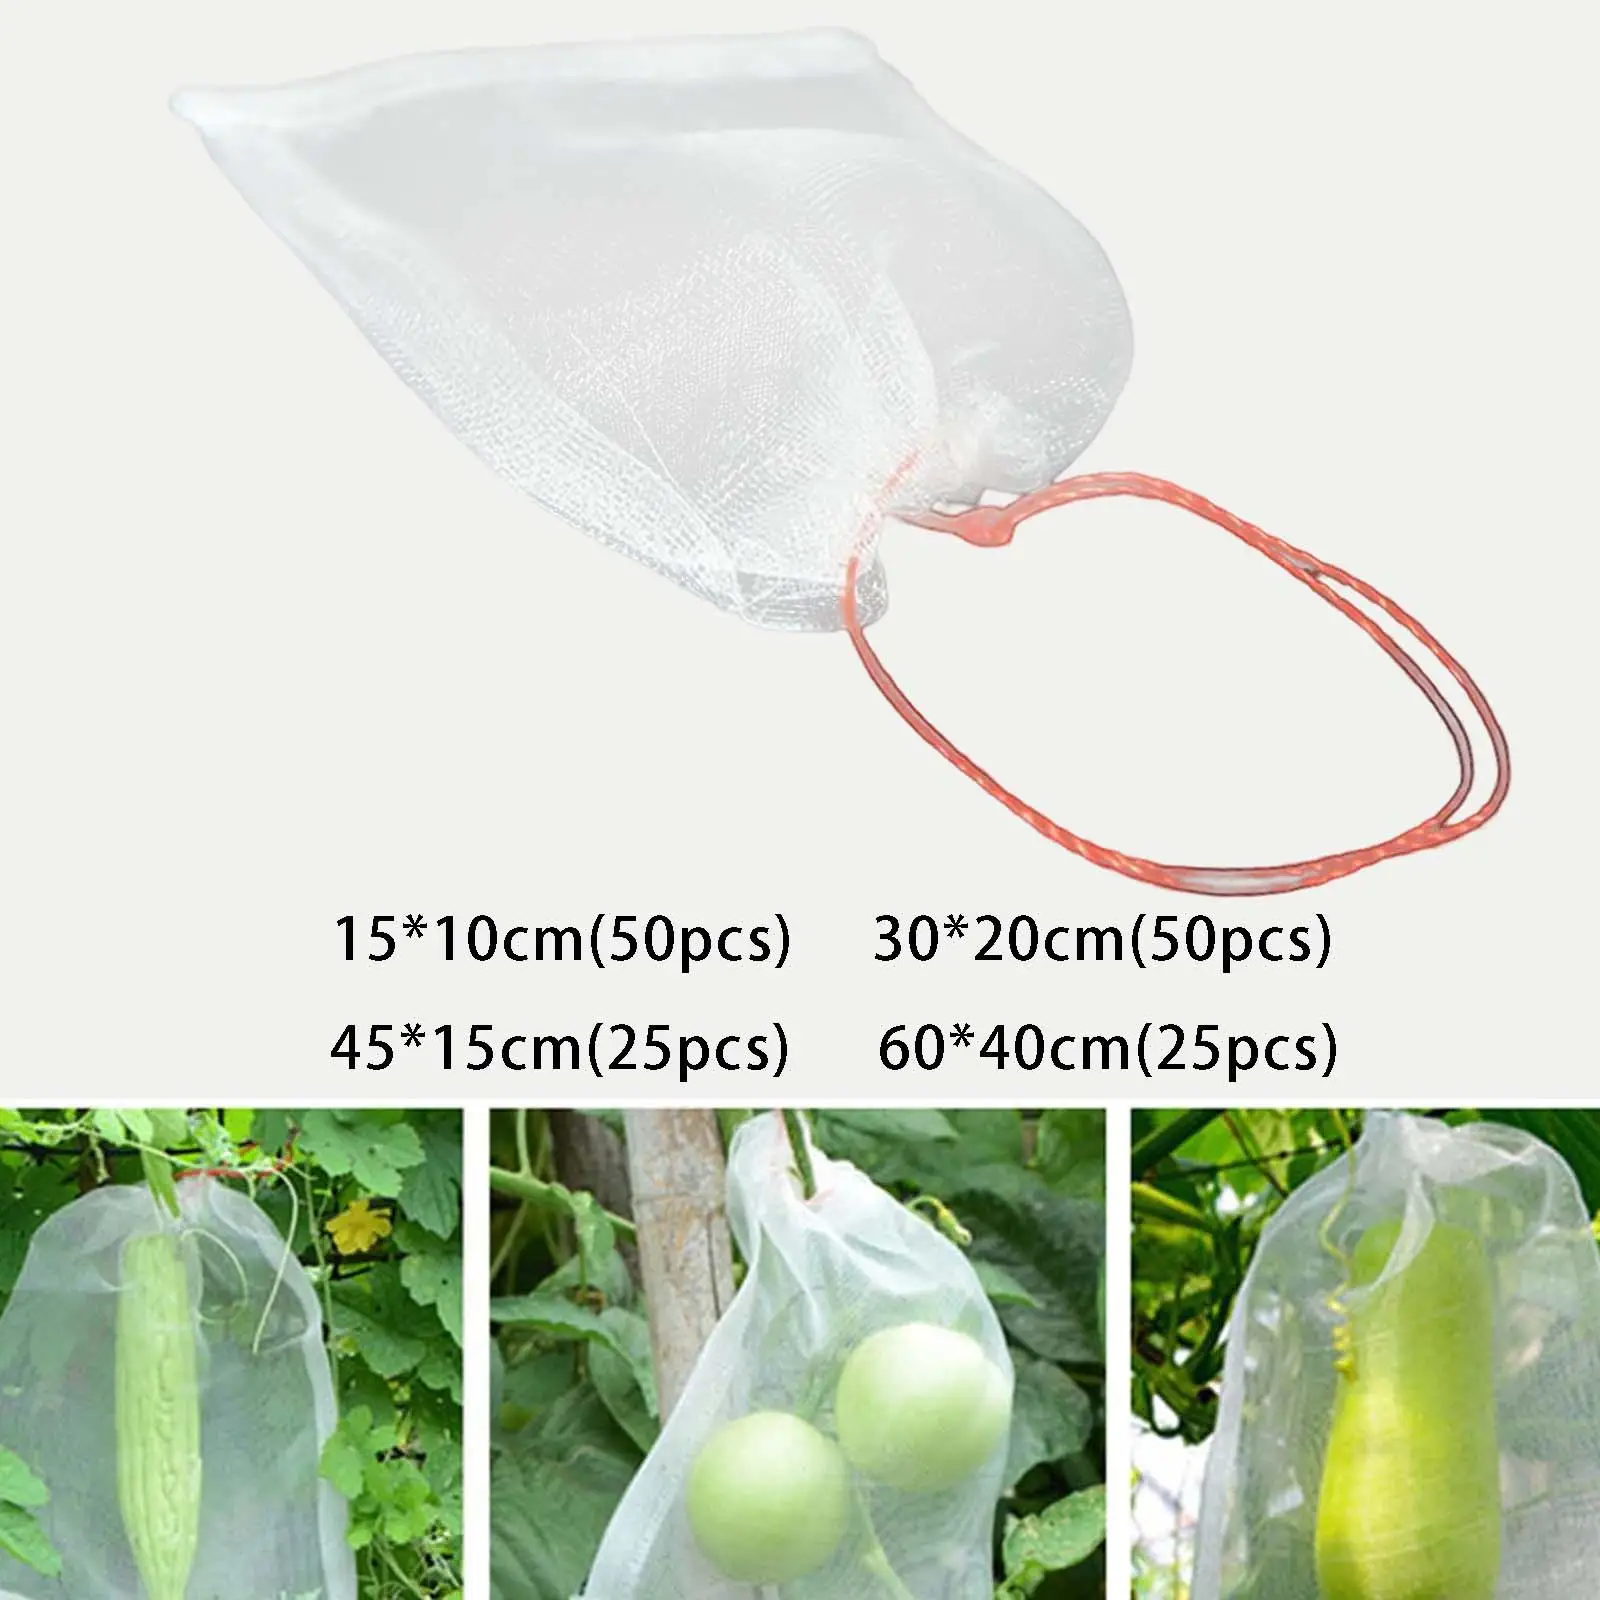 Nylon Fruit Protection Bags Multifunctional Fruit Netting Bags for Flower